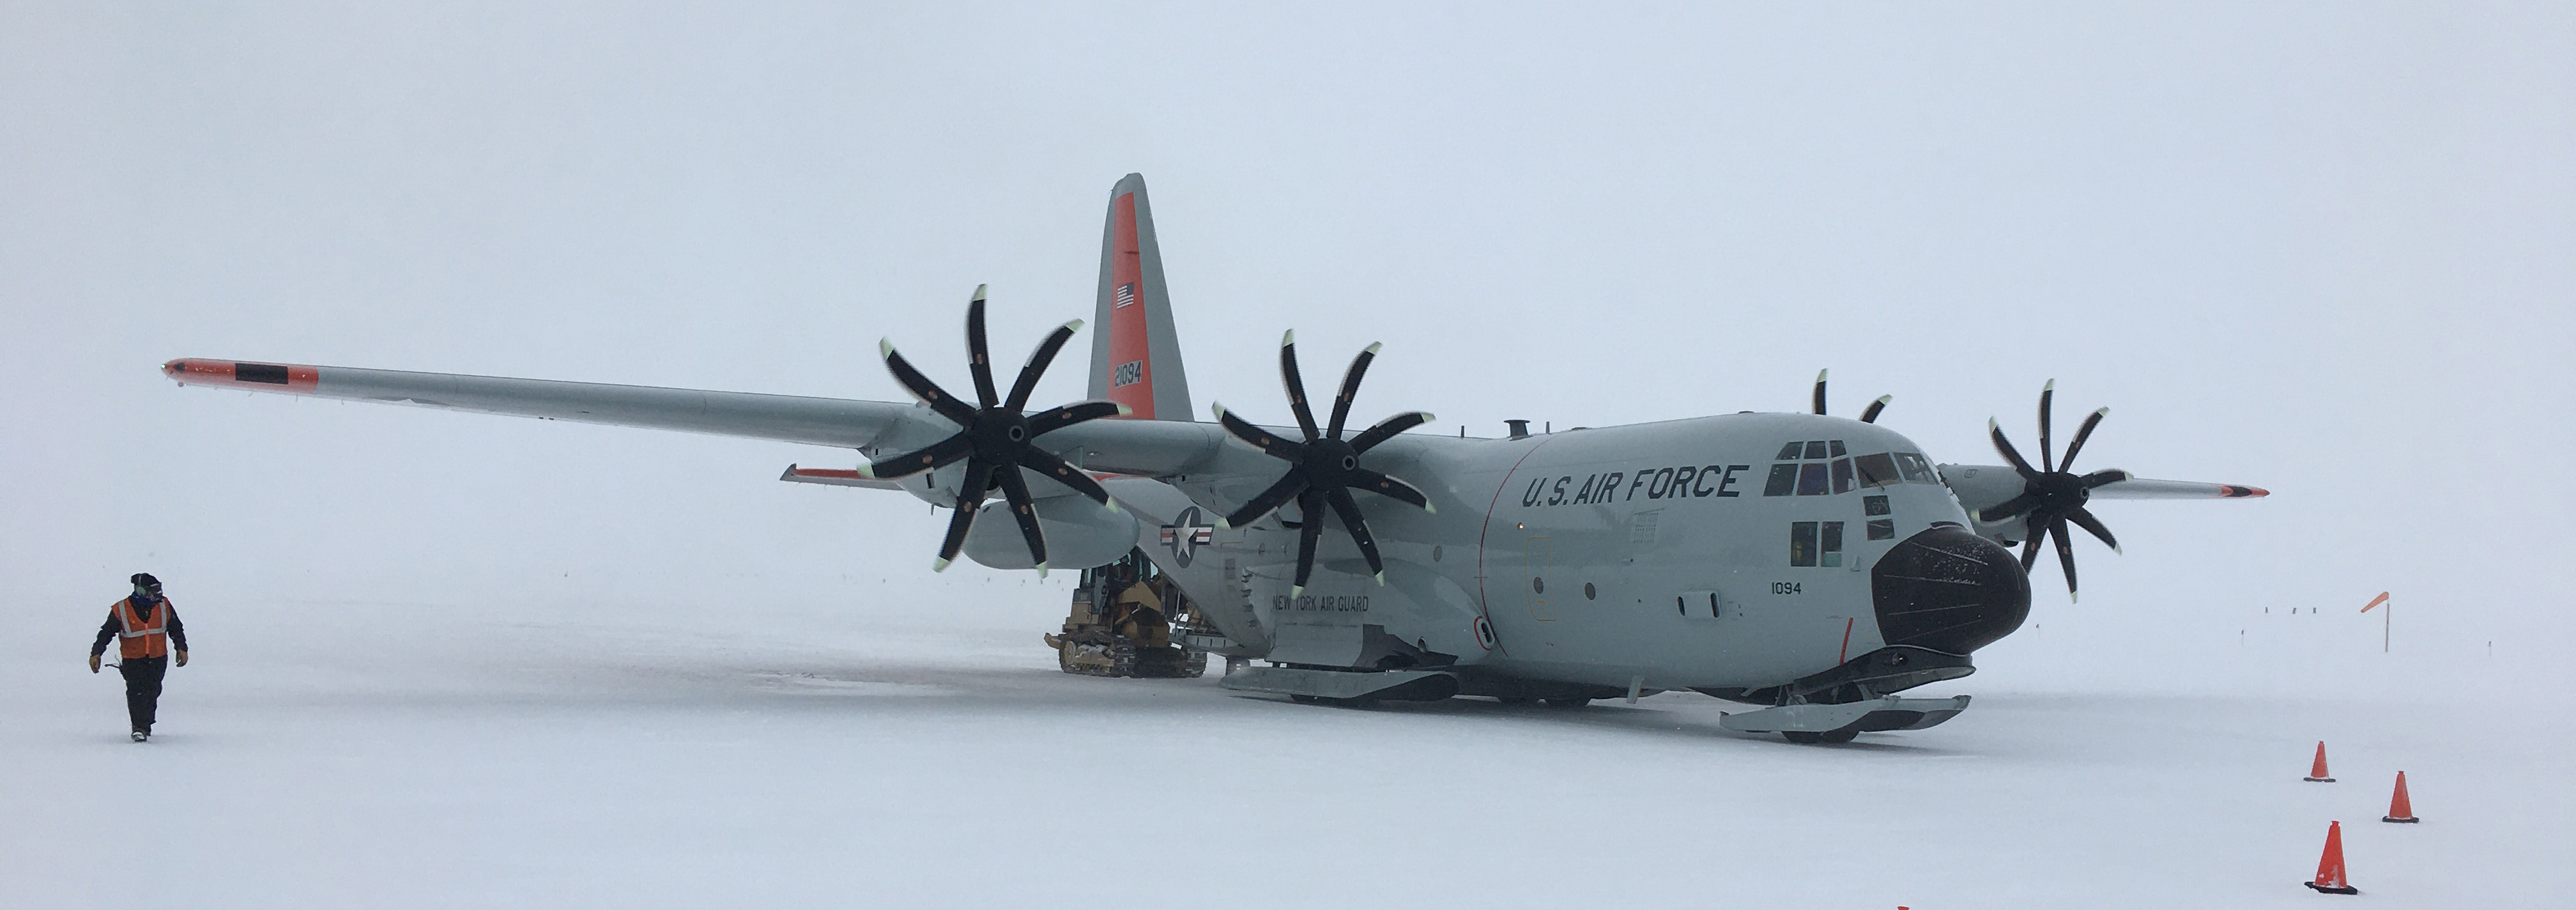 Landing in Antarctica